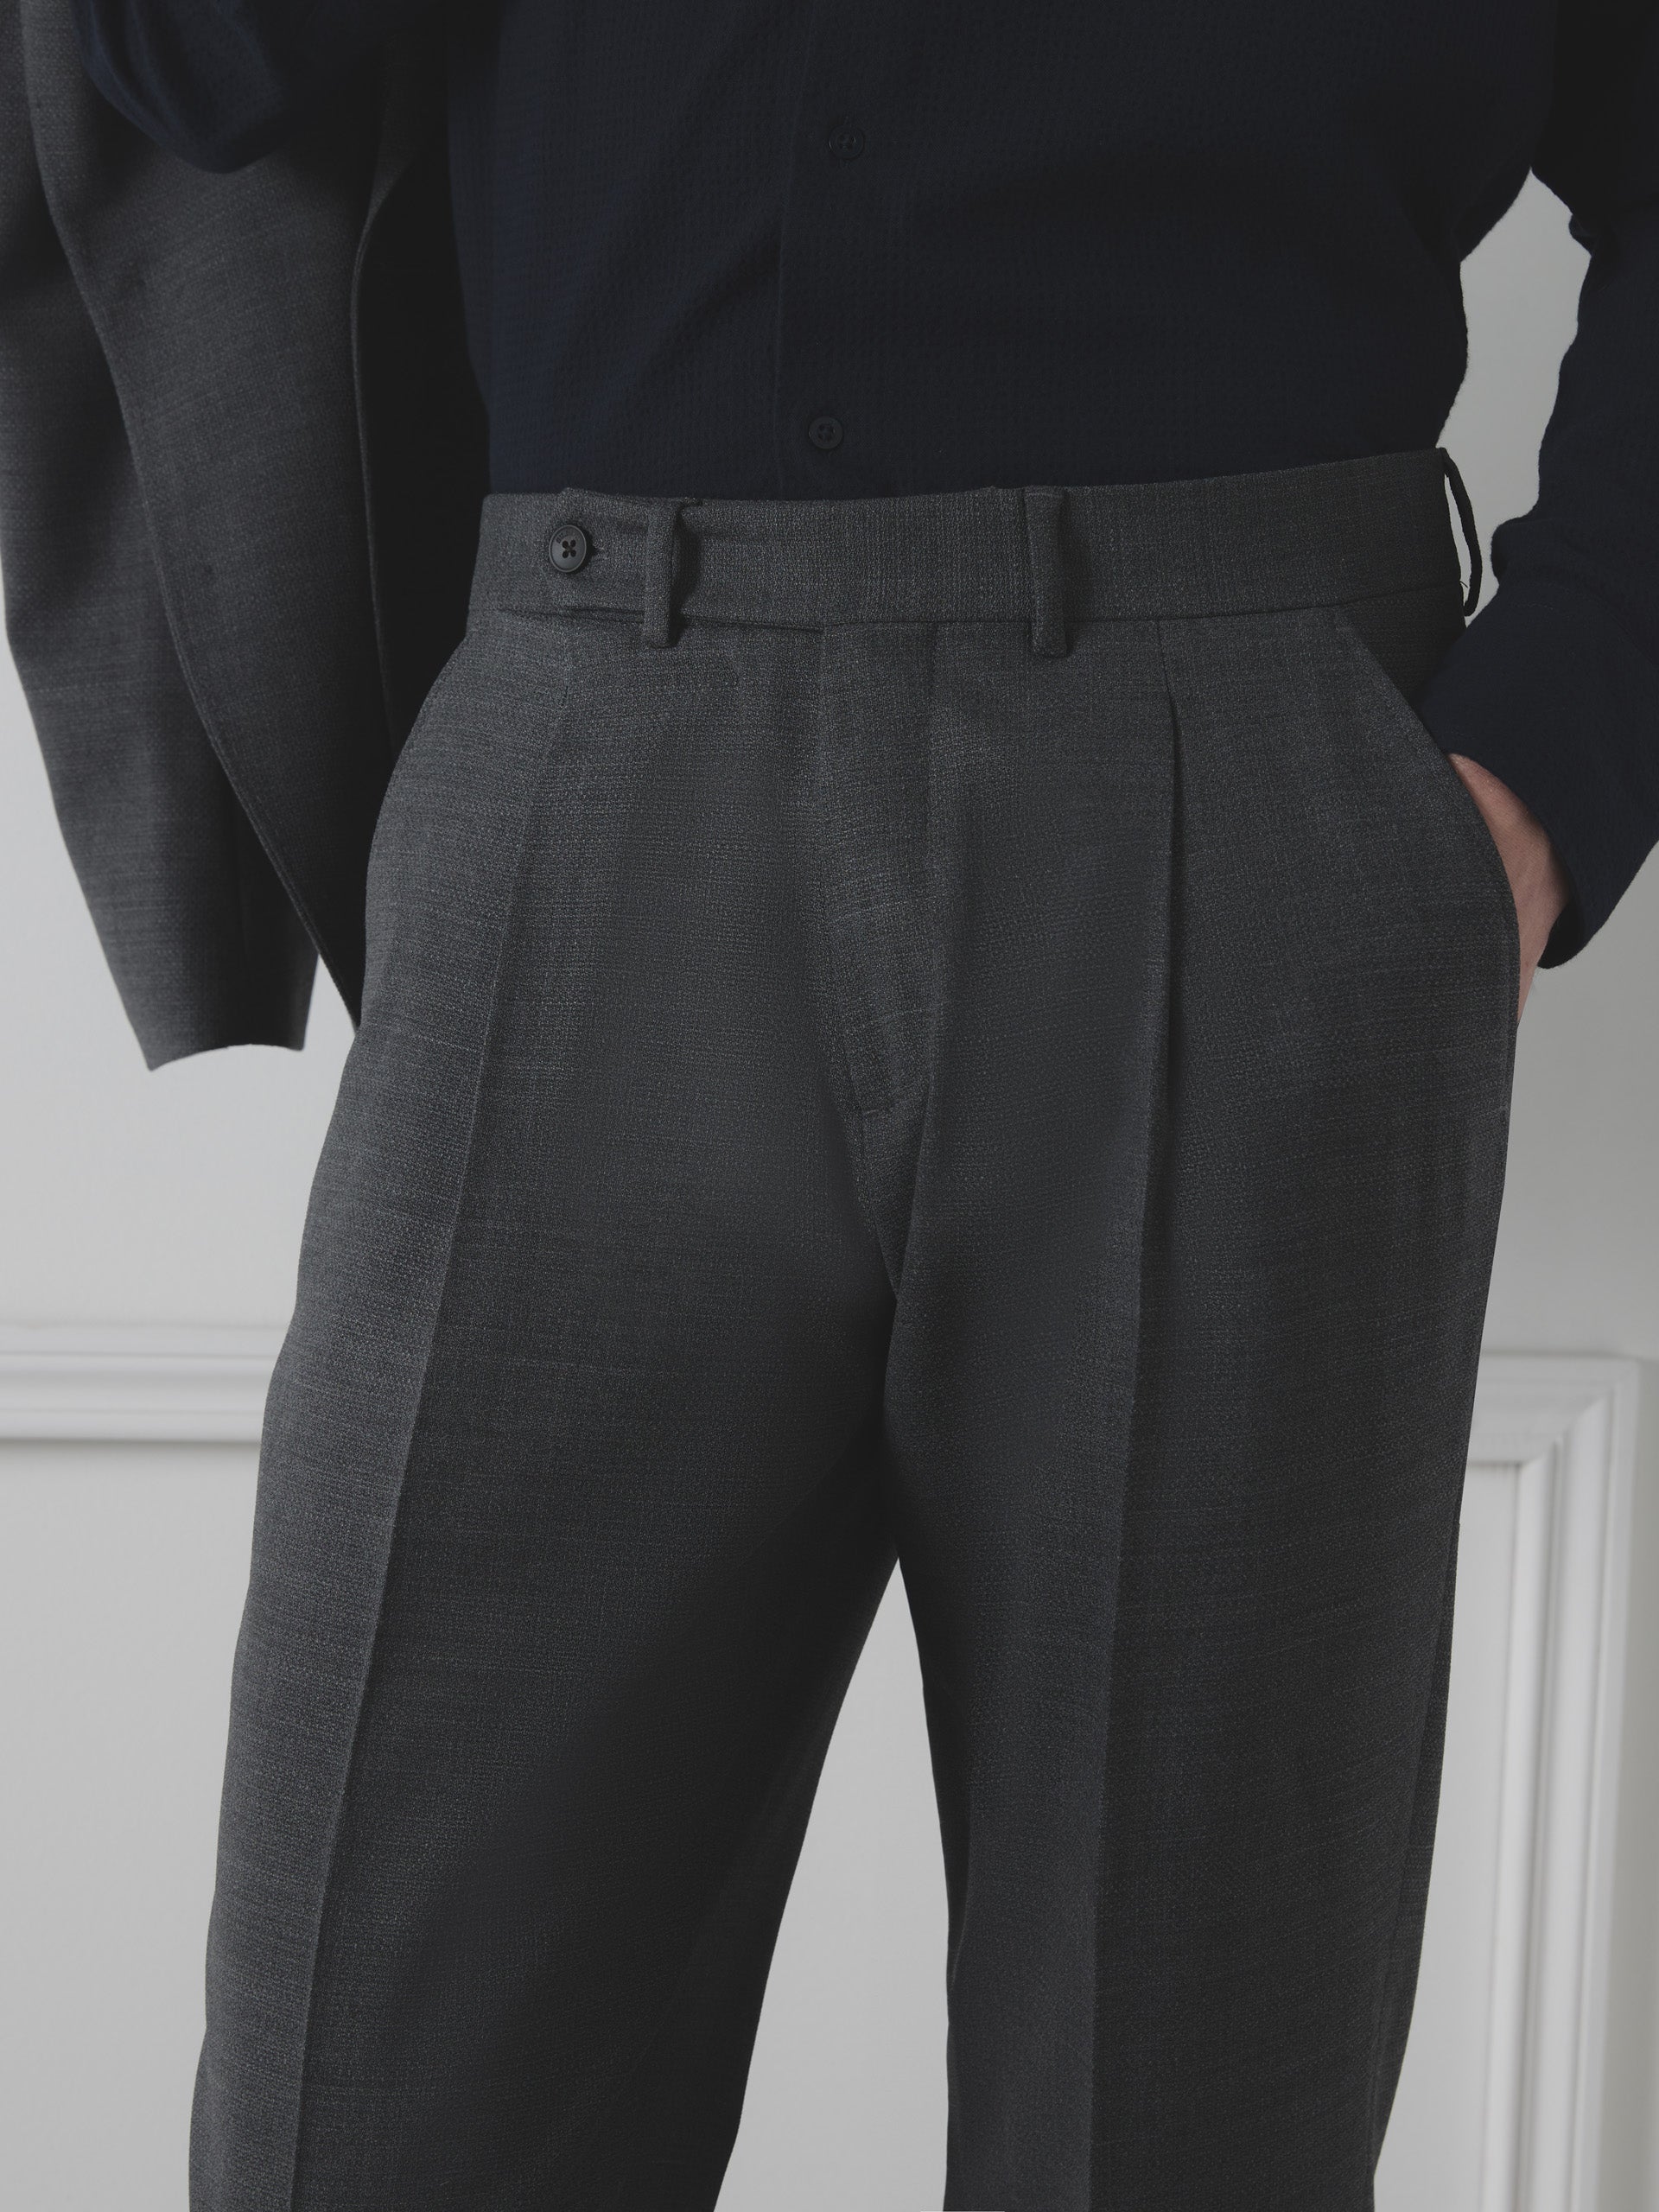 Silbon unique gray suit pants